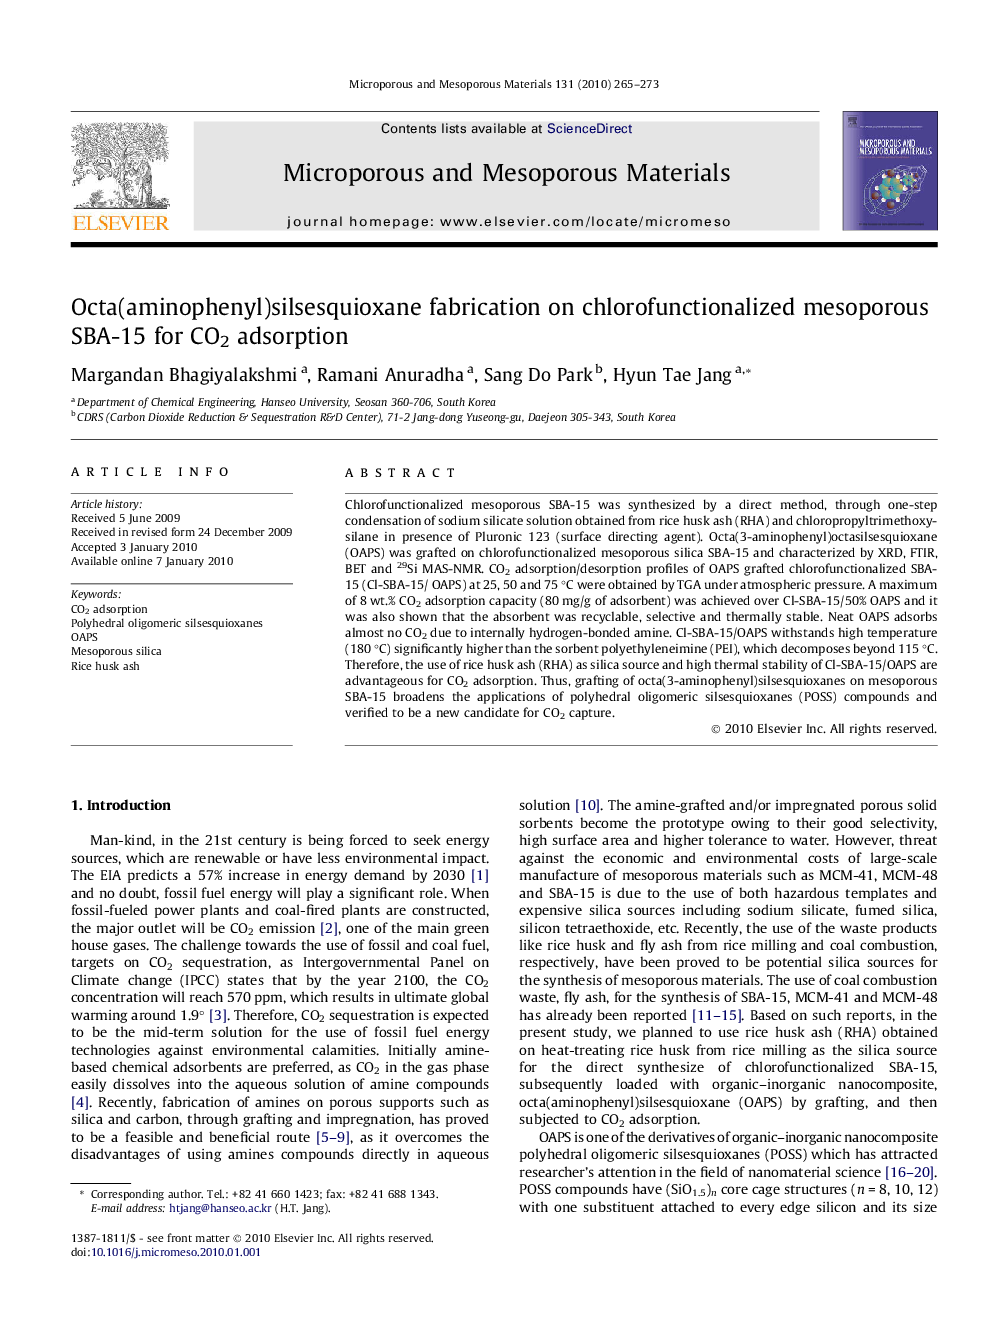 Octa(aminophenyl)silsesquioxane fabrication on chlorofunctionalized mesoporous SBA-15 for CO2 adsorption